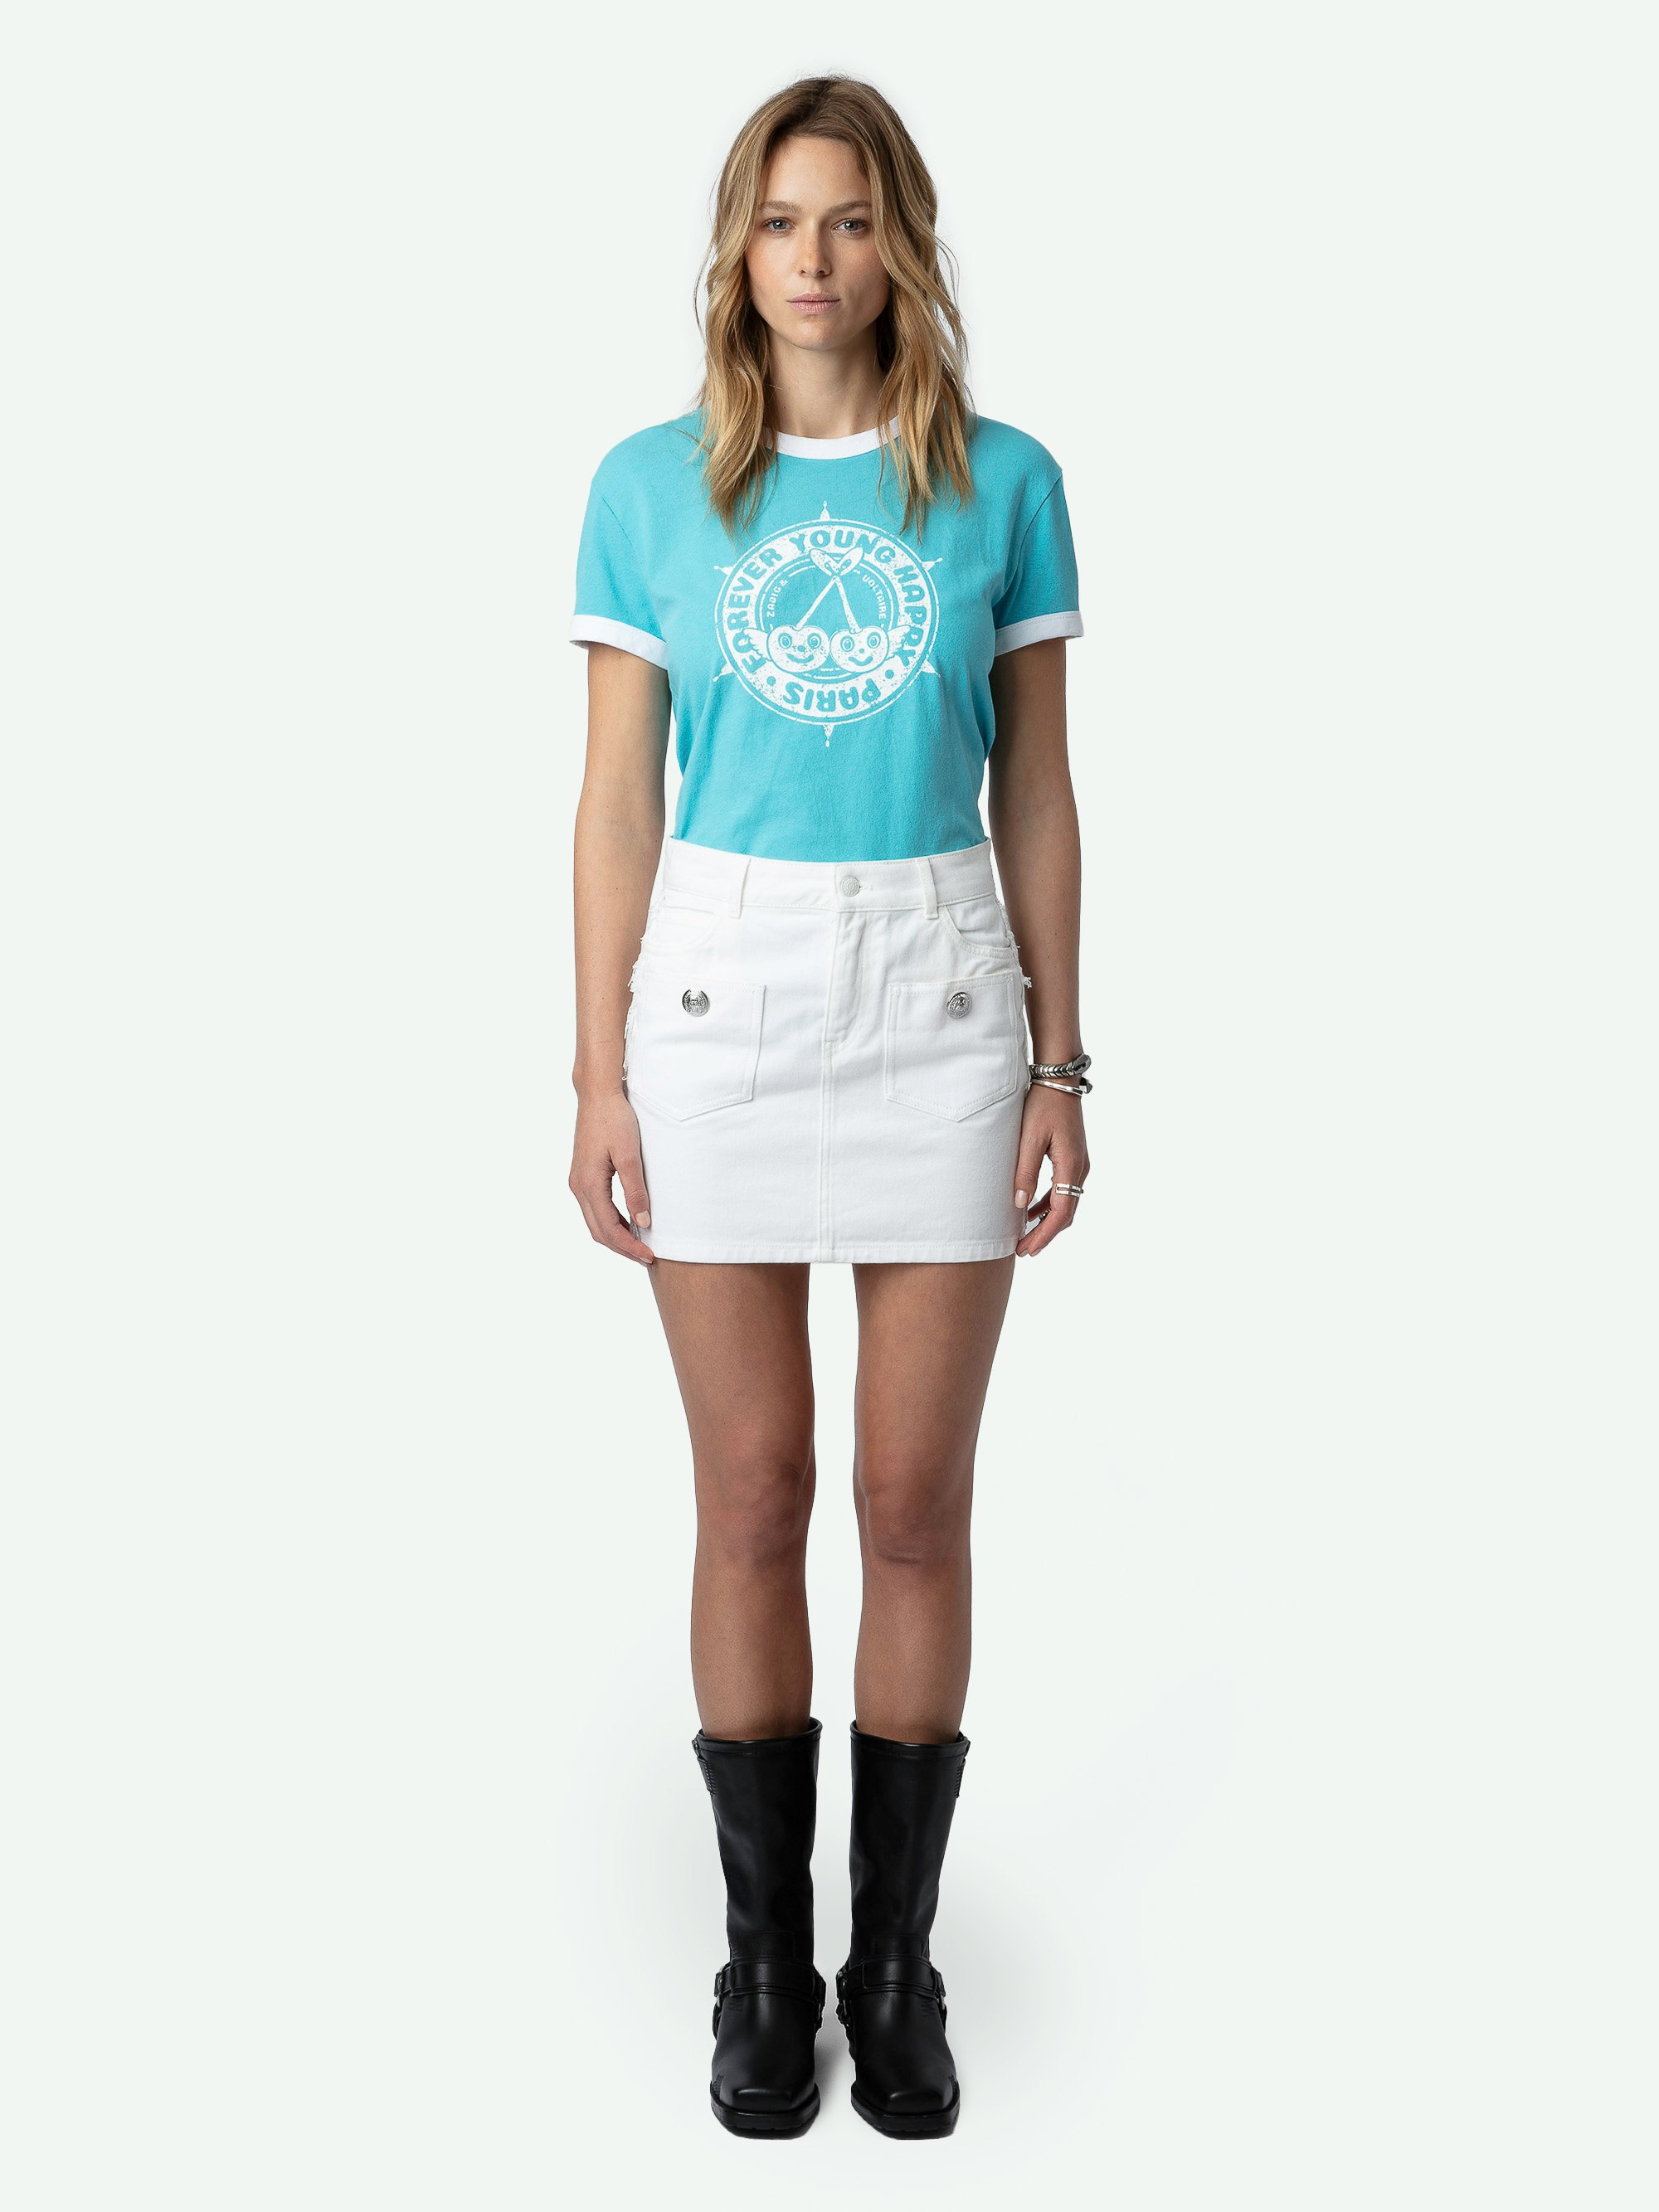 T-shirt Walk Stemma - T-shirt in cotone biologico blu con maniche corte e stampe di stemmi e ciliegie sul davanti.